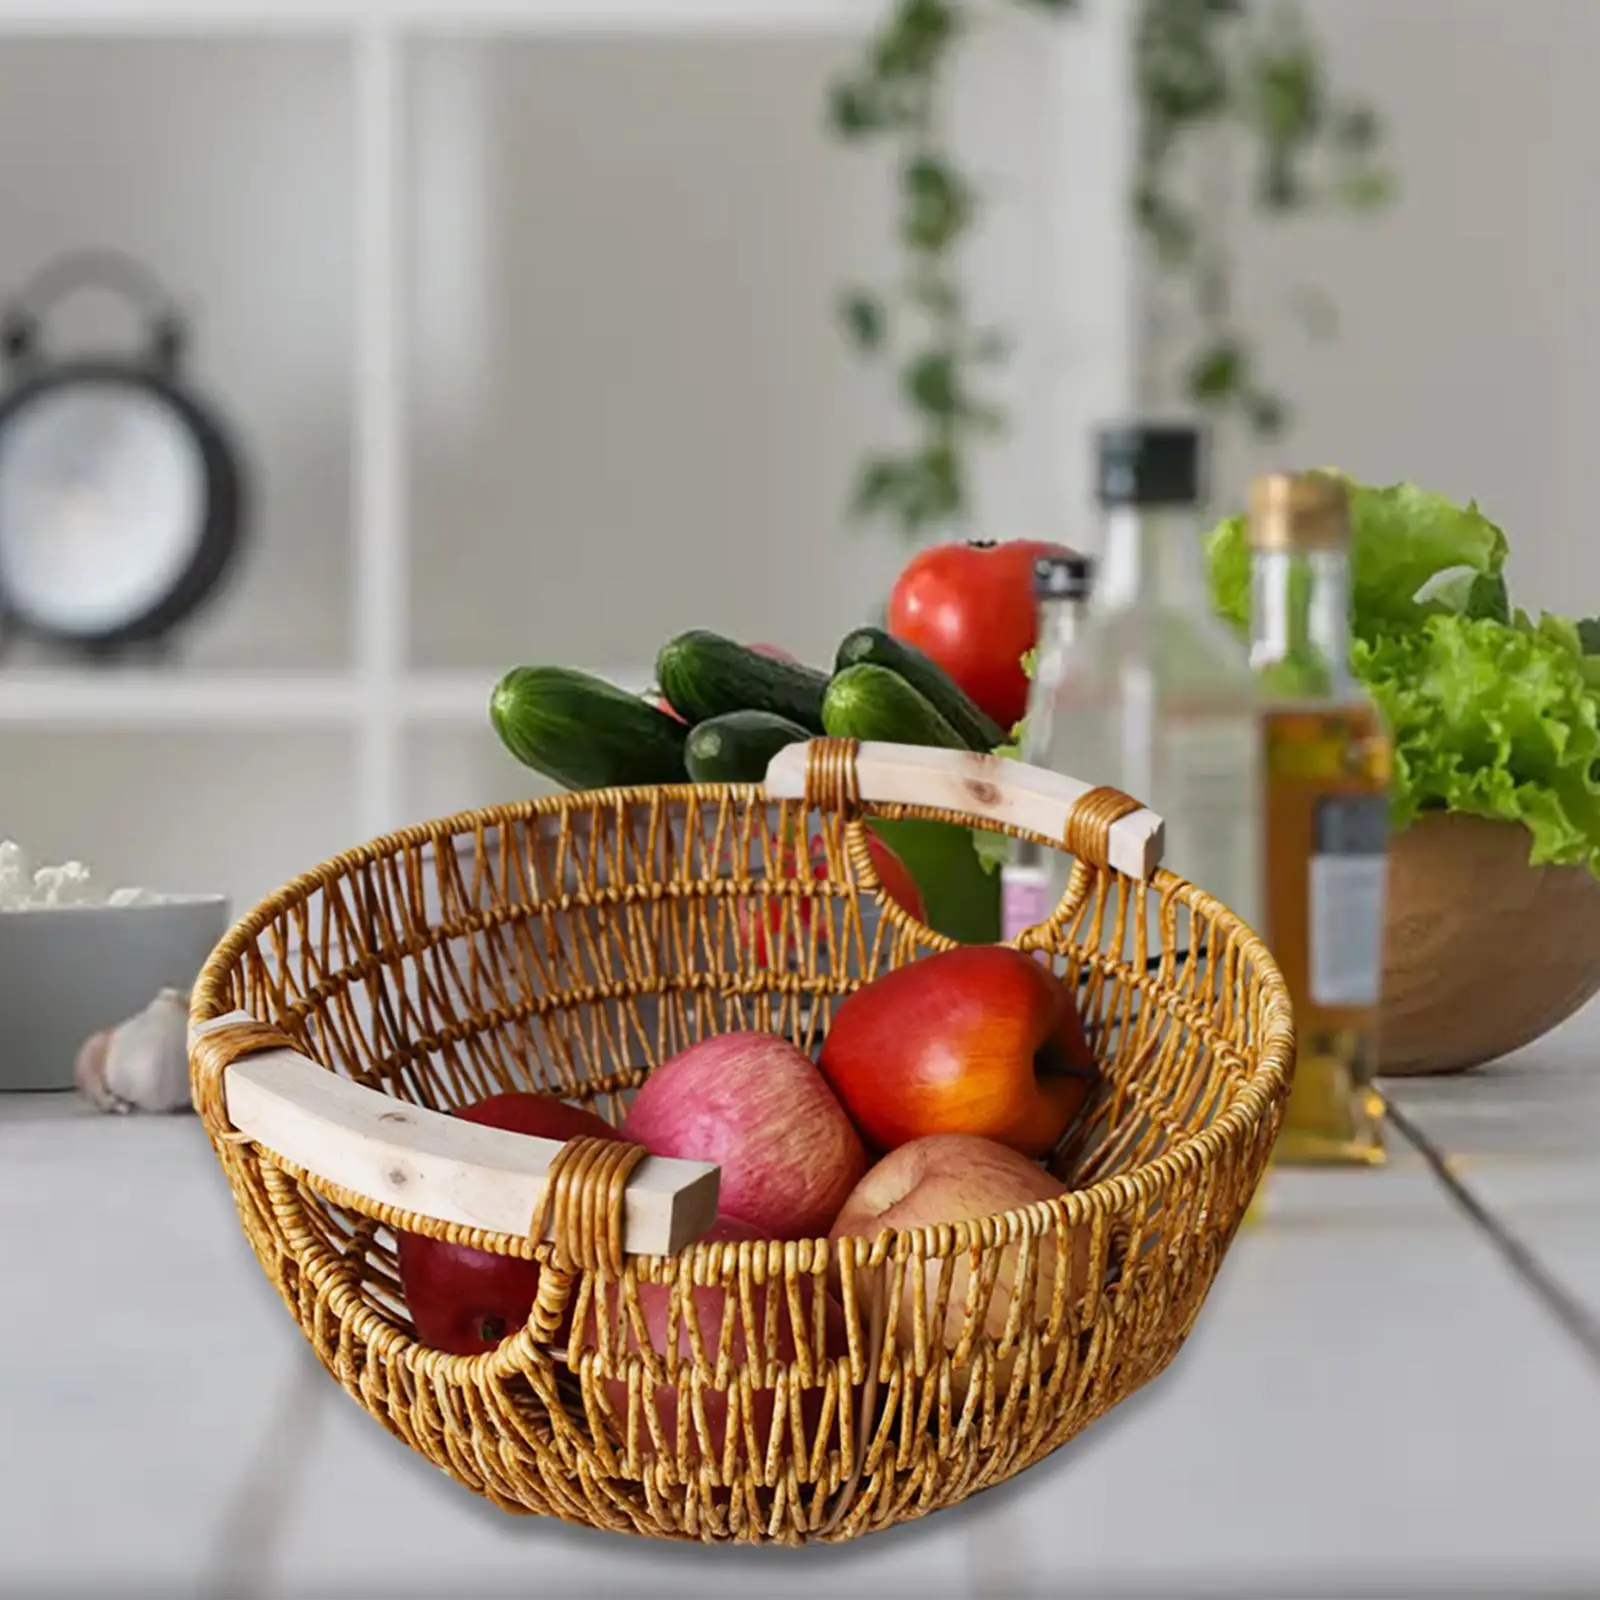 Woven Basket Camping Basket Household Fruit Container Decorative Storage Basket Hamper Basket Vegetable Basket for Home Garden